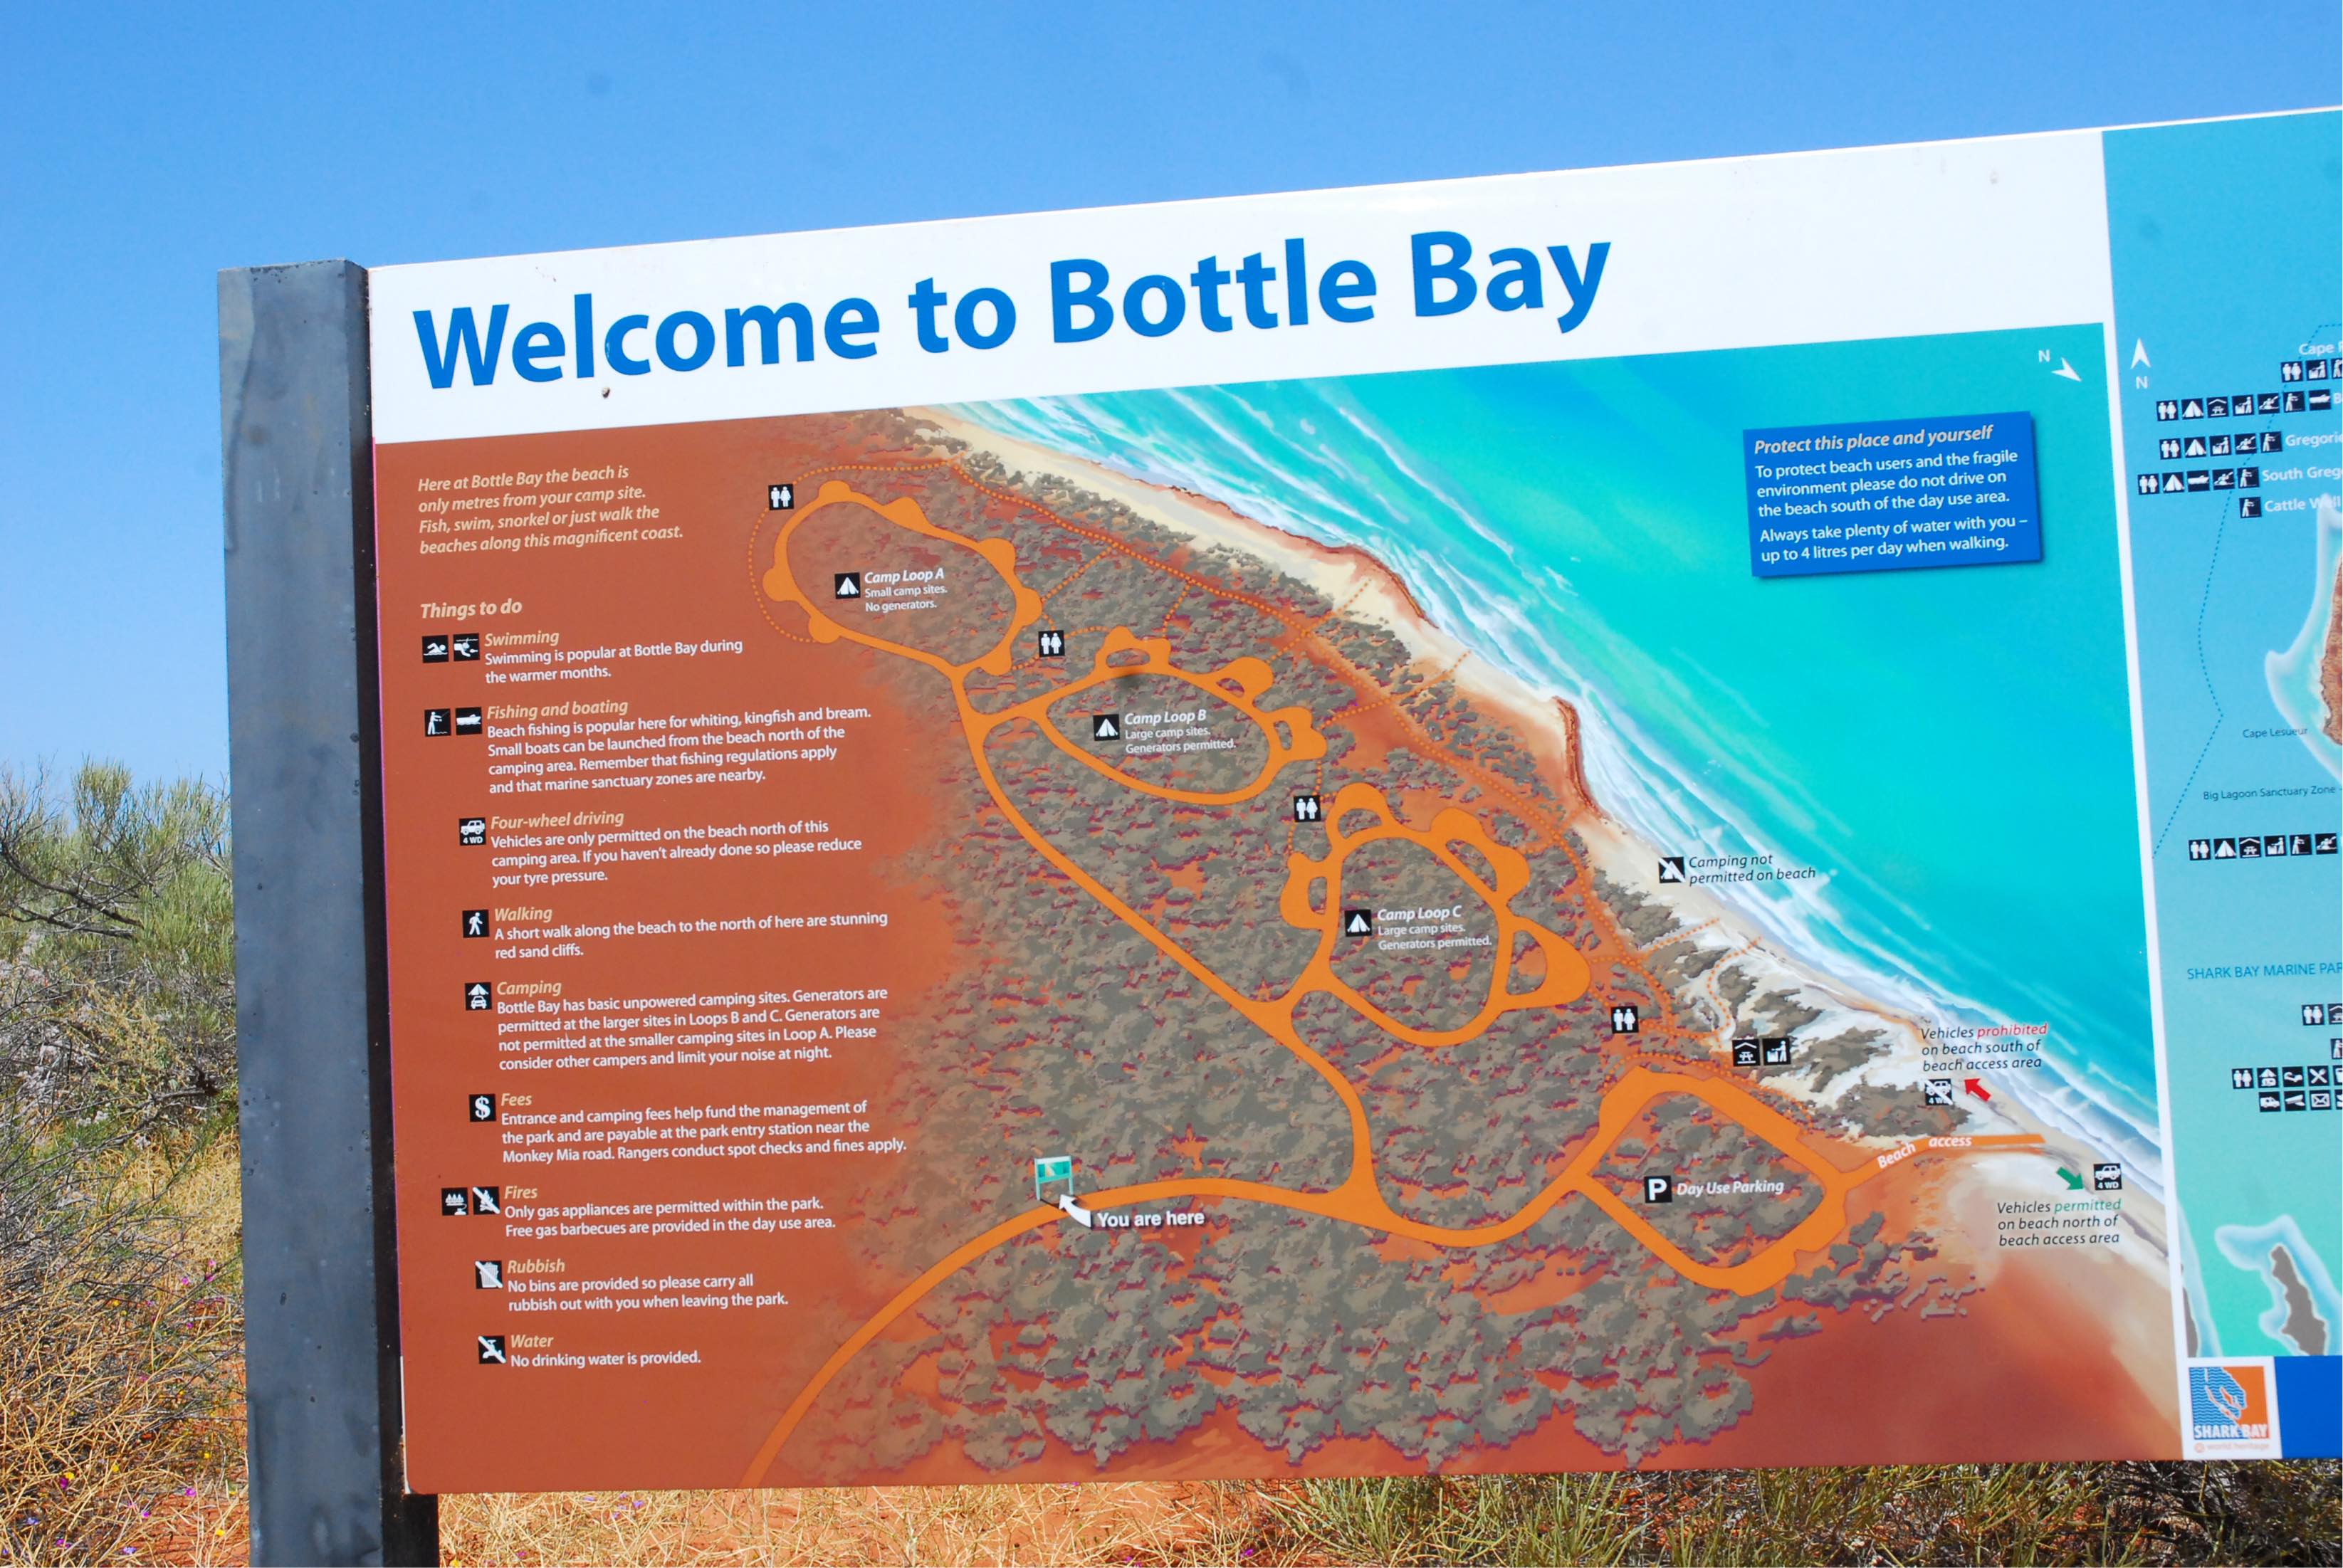 Bottle bay